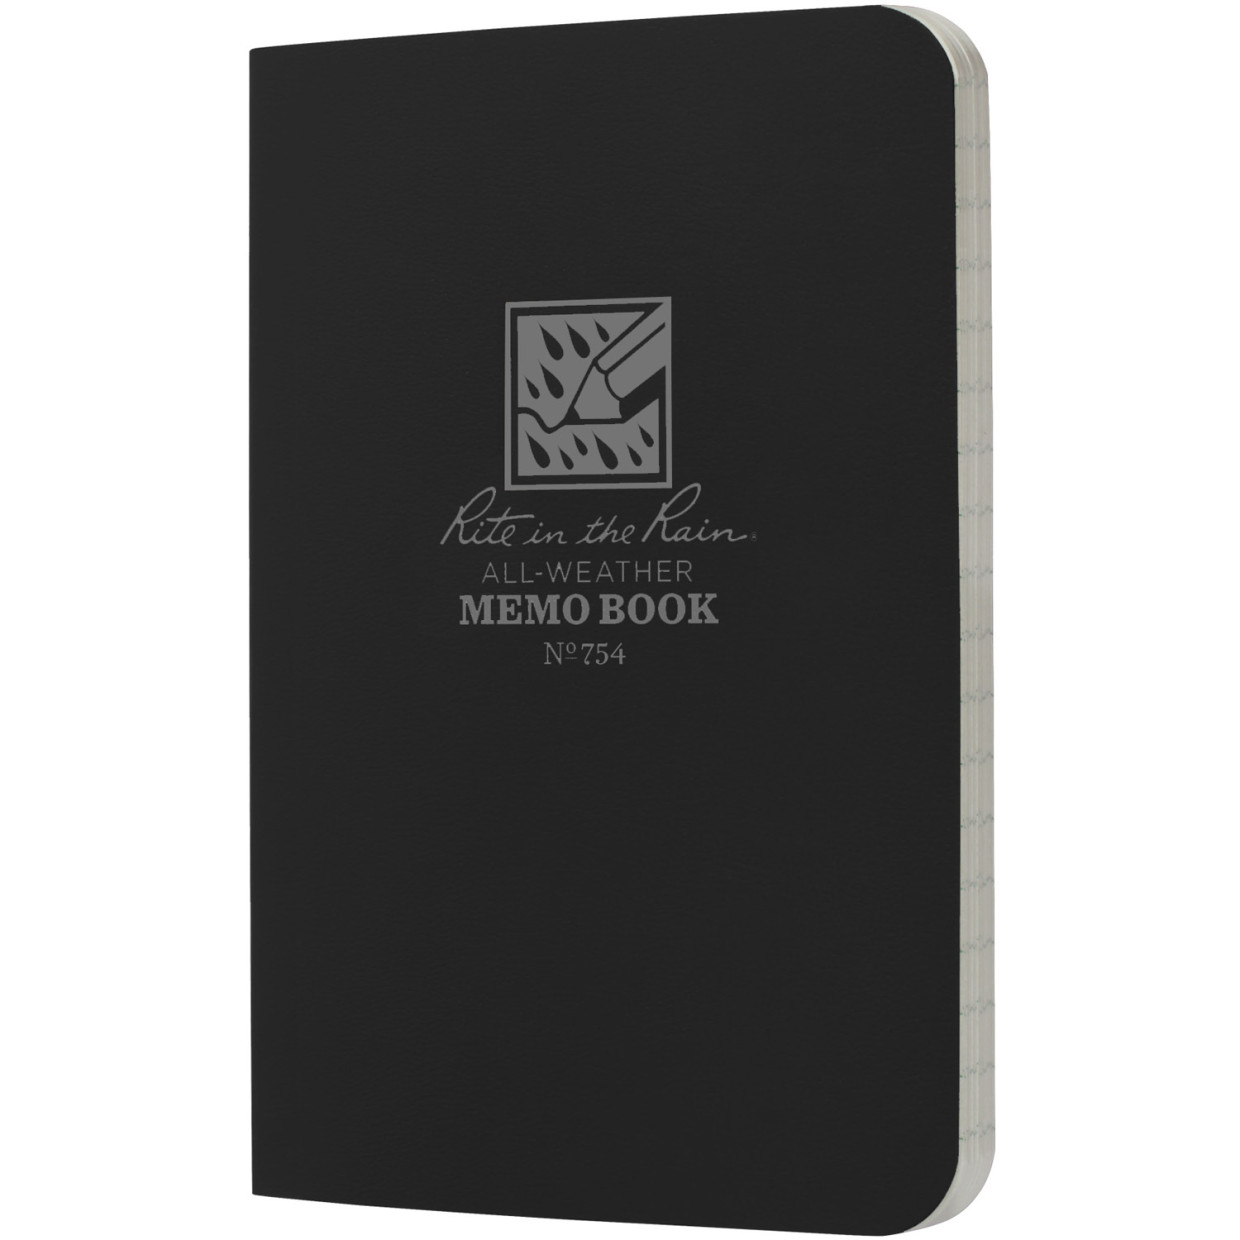 Vodeodolný zápisník – Memo Book